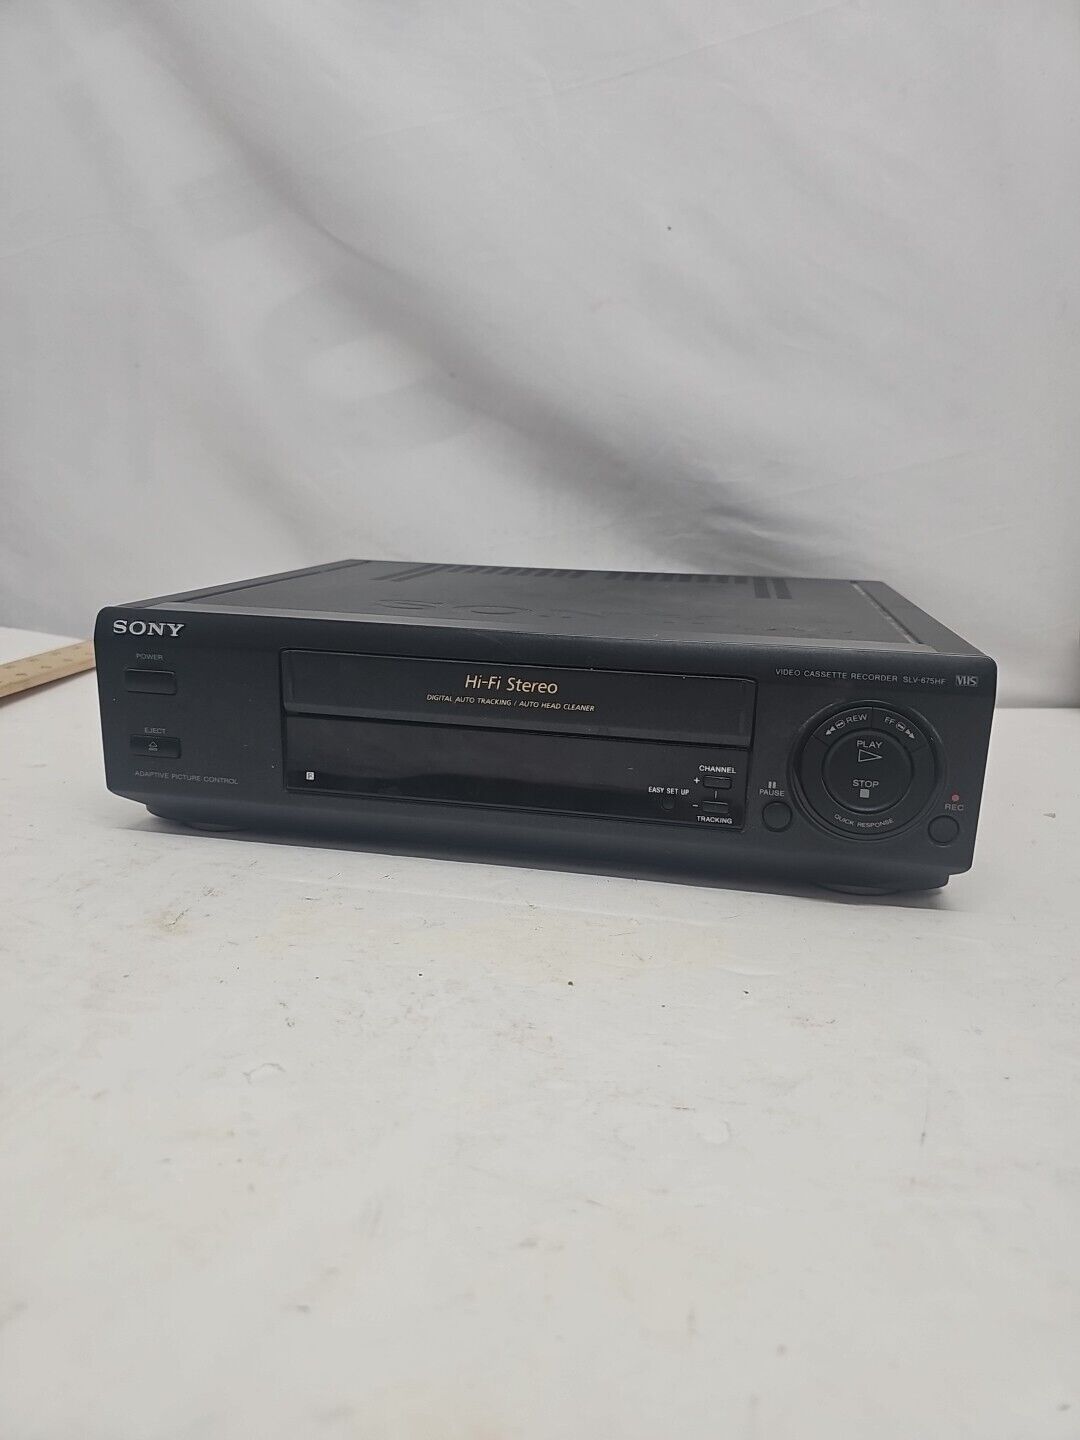 Sony SLV-675HF VCR 4 Head VHS Video Cassette Recorder Hi-Fi Stereo - No Remote 